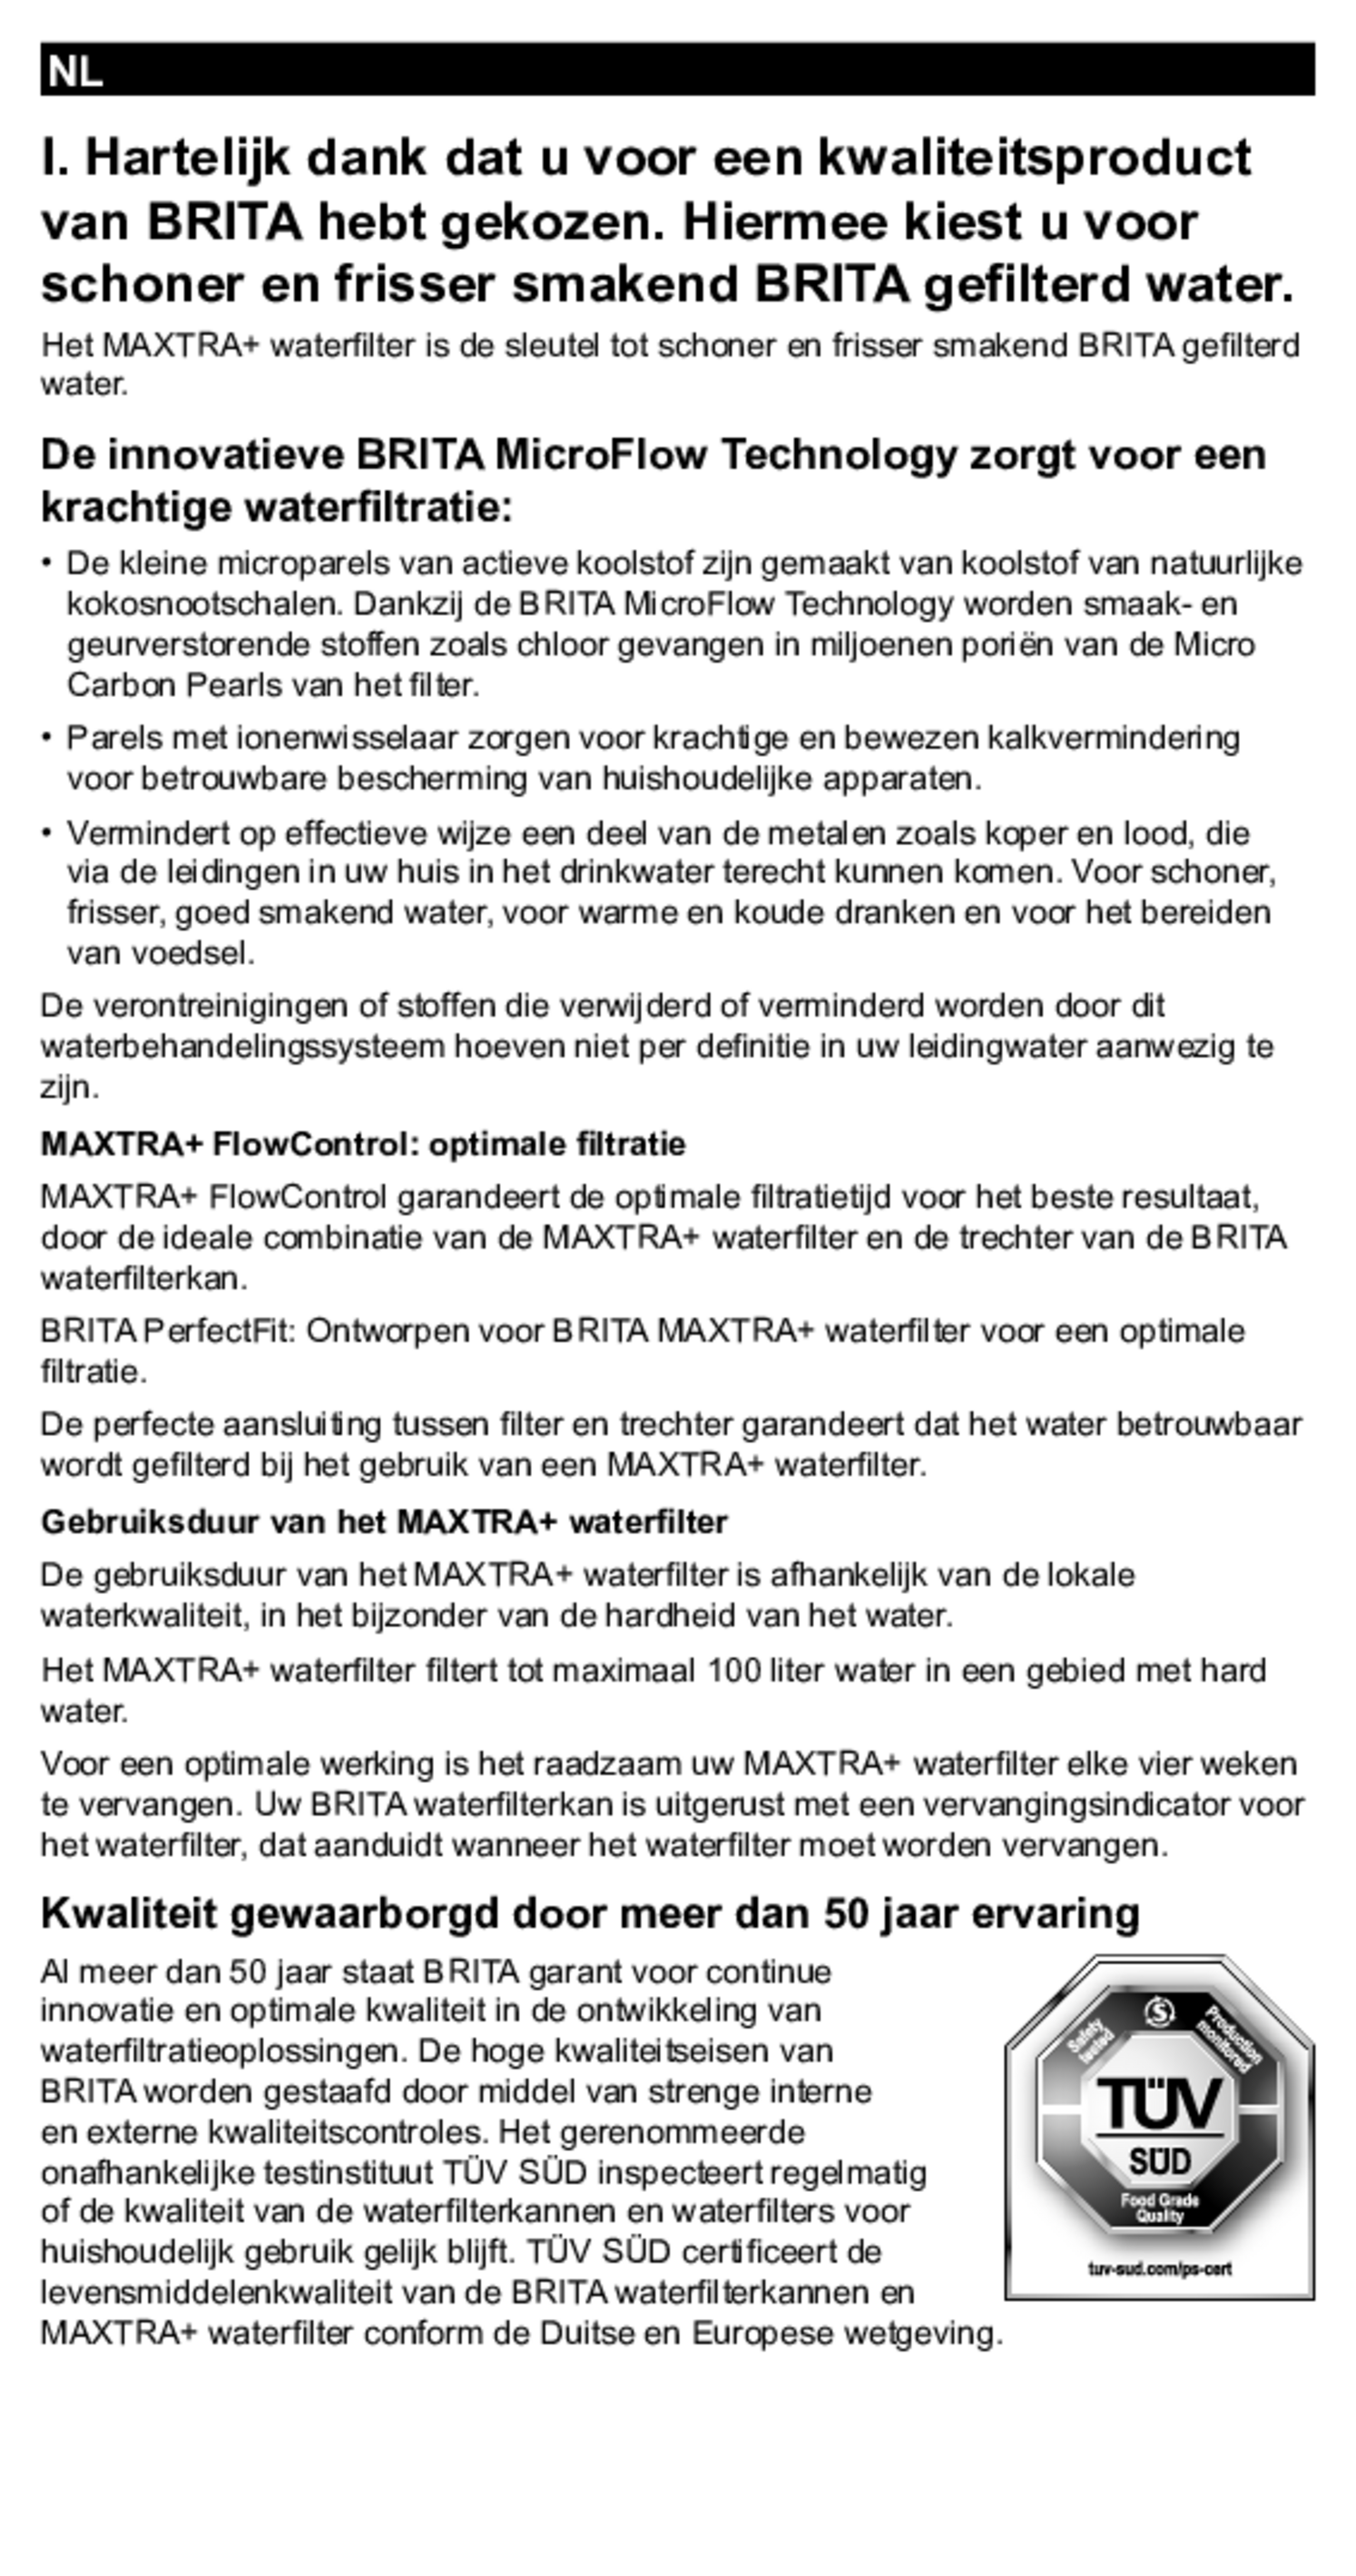 Marella Waterfilterkan Wit + 2 Maxtra Filterpatronen afbeelding van document #20, gebruiksaanwijzing